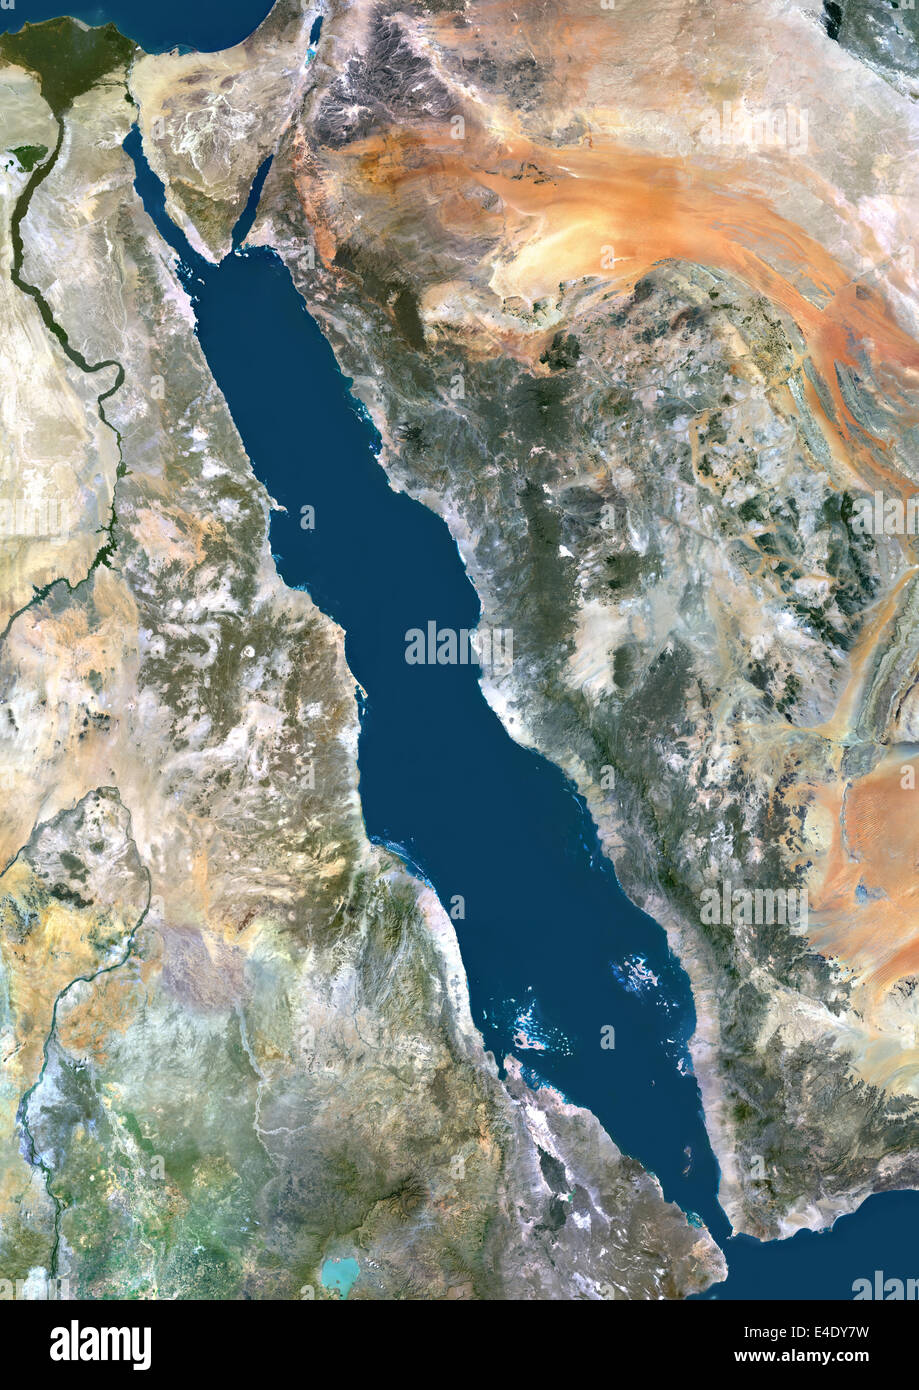 Rotes Meer, Nahost, Echtfarben-Satellitenbild. Echtfarben-Satellitenbild des Roten Meeres, eine Meerwasser-Bucht des indischen OK Stockfoto